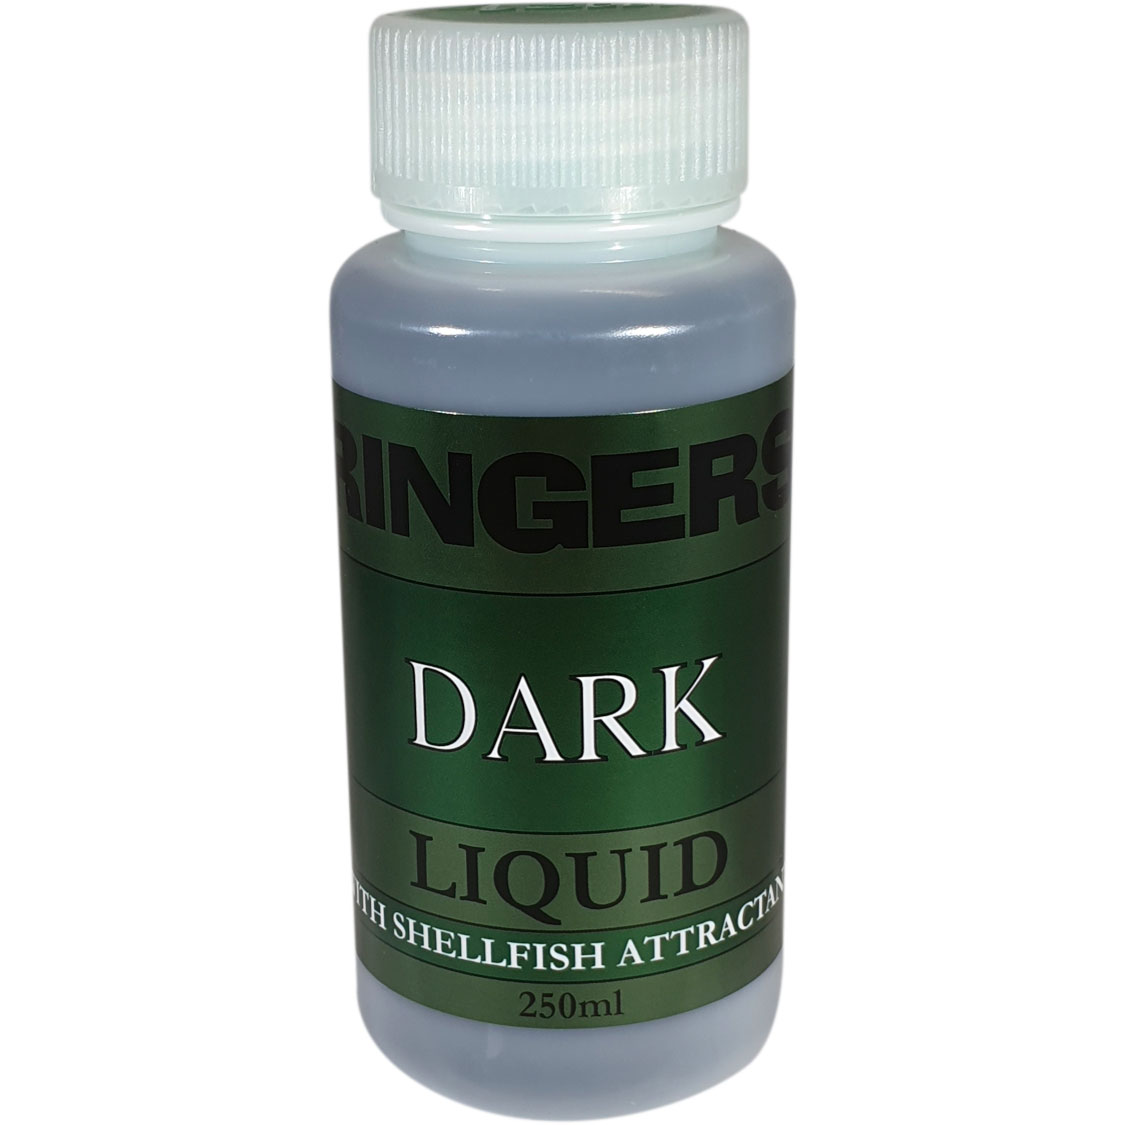 Ringers Liquid - Dark